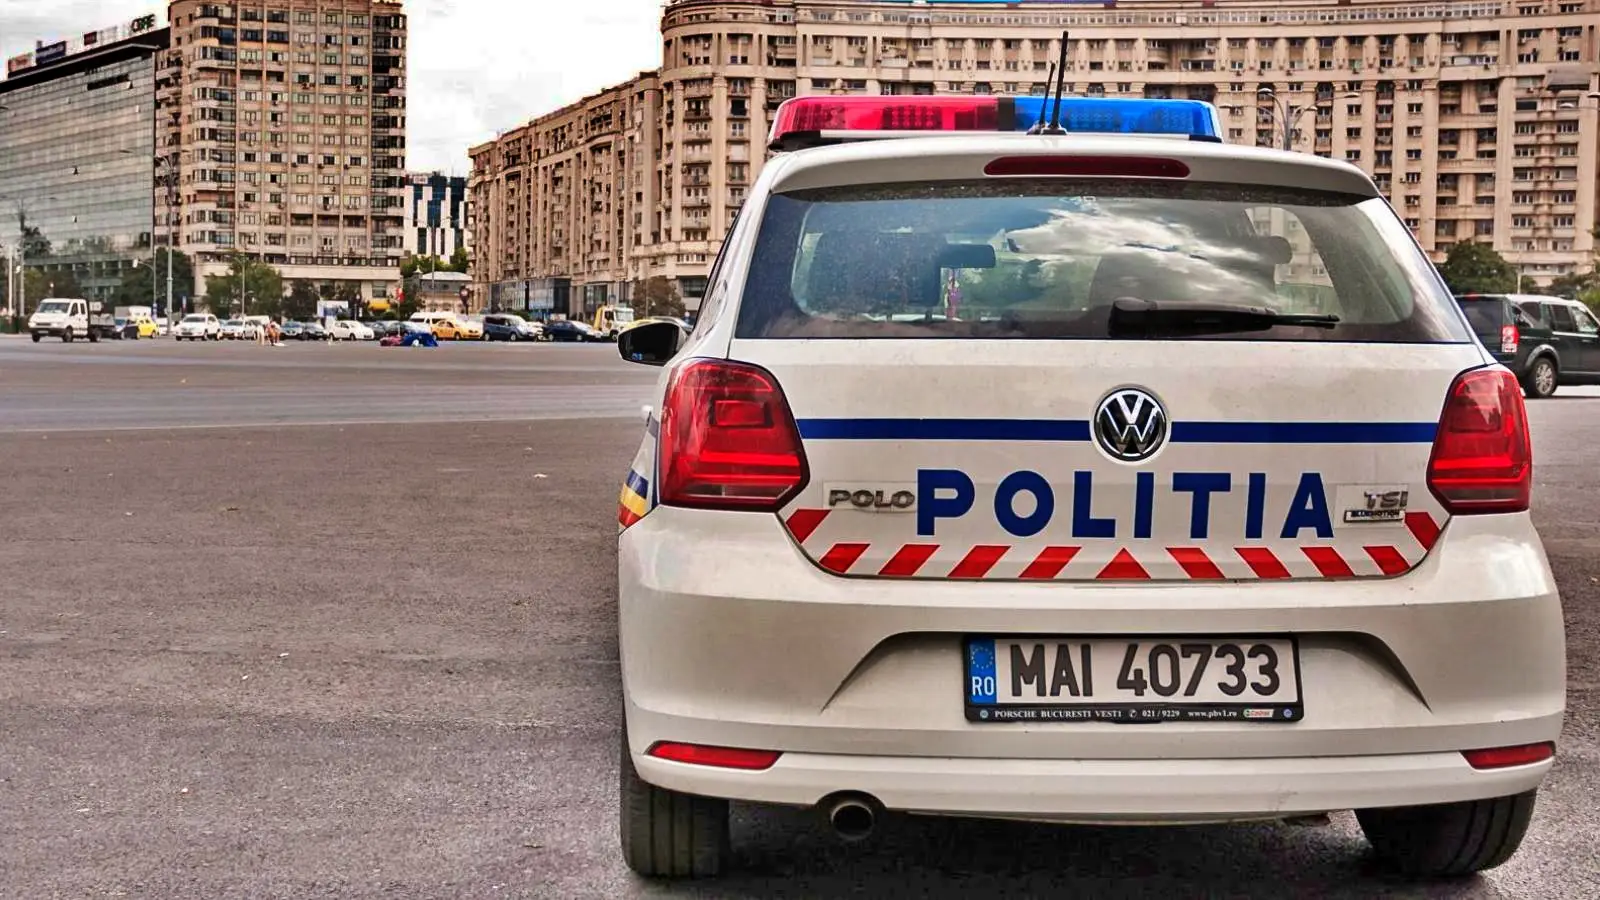 Det rumænske politi fortsætter serien af ​​advarsler til rumænske chauffører